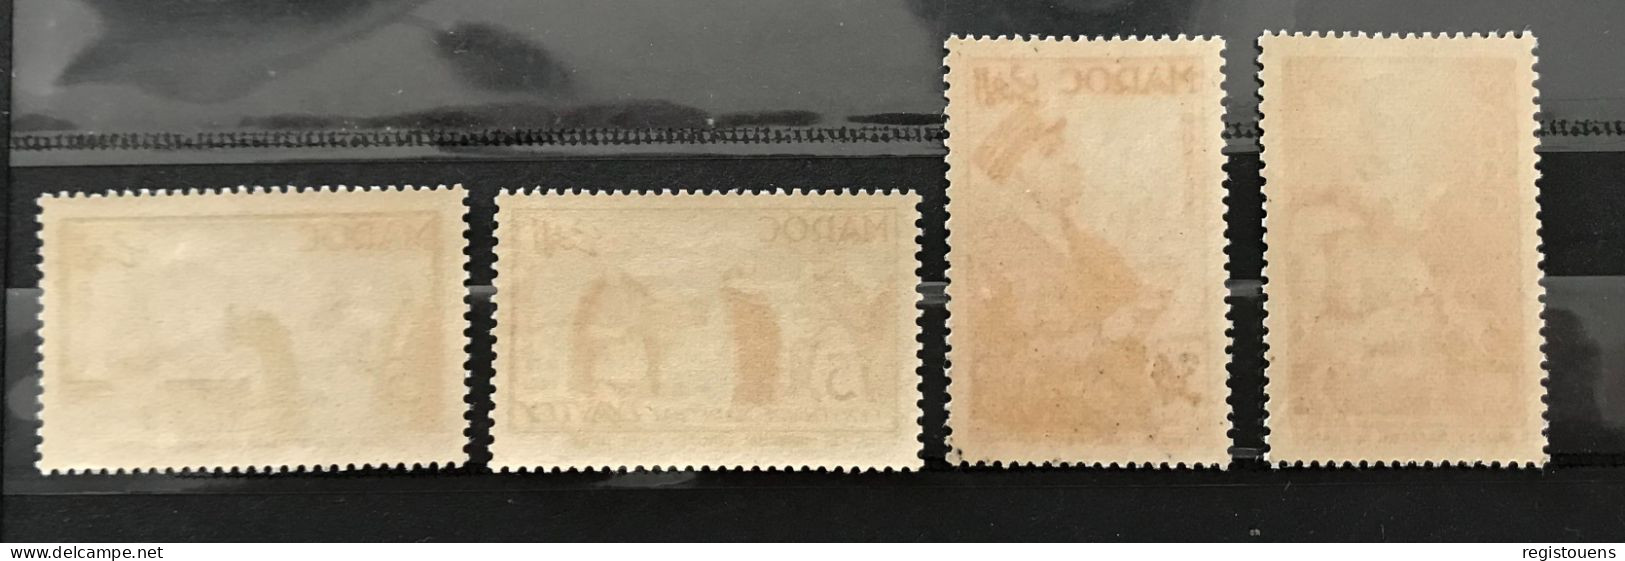 Lot De 4 Timbres Neufs* Maroc 1954 Y& T N° 335 à 338 - Unused Stamps